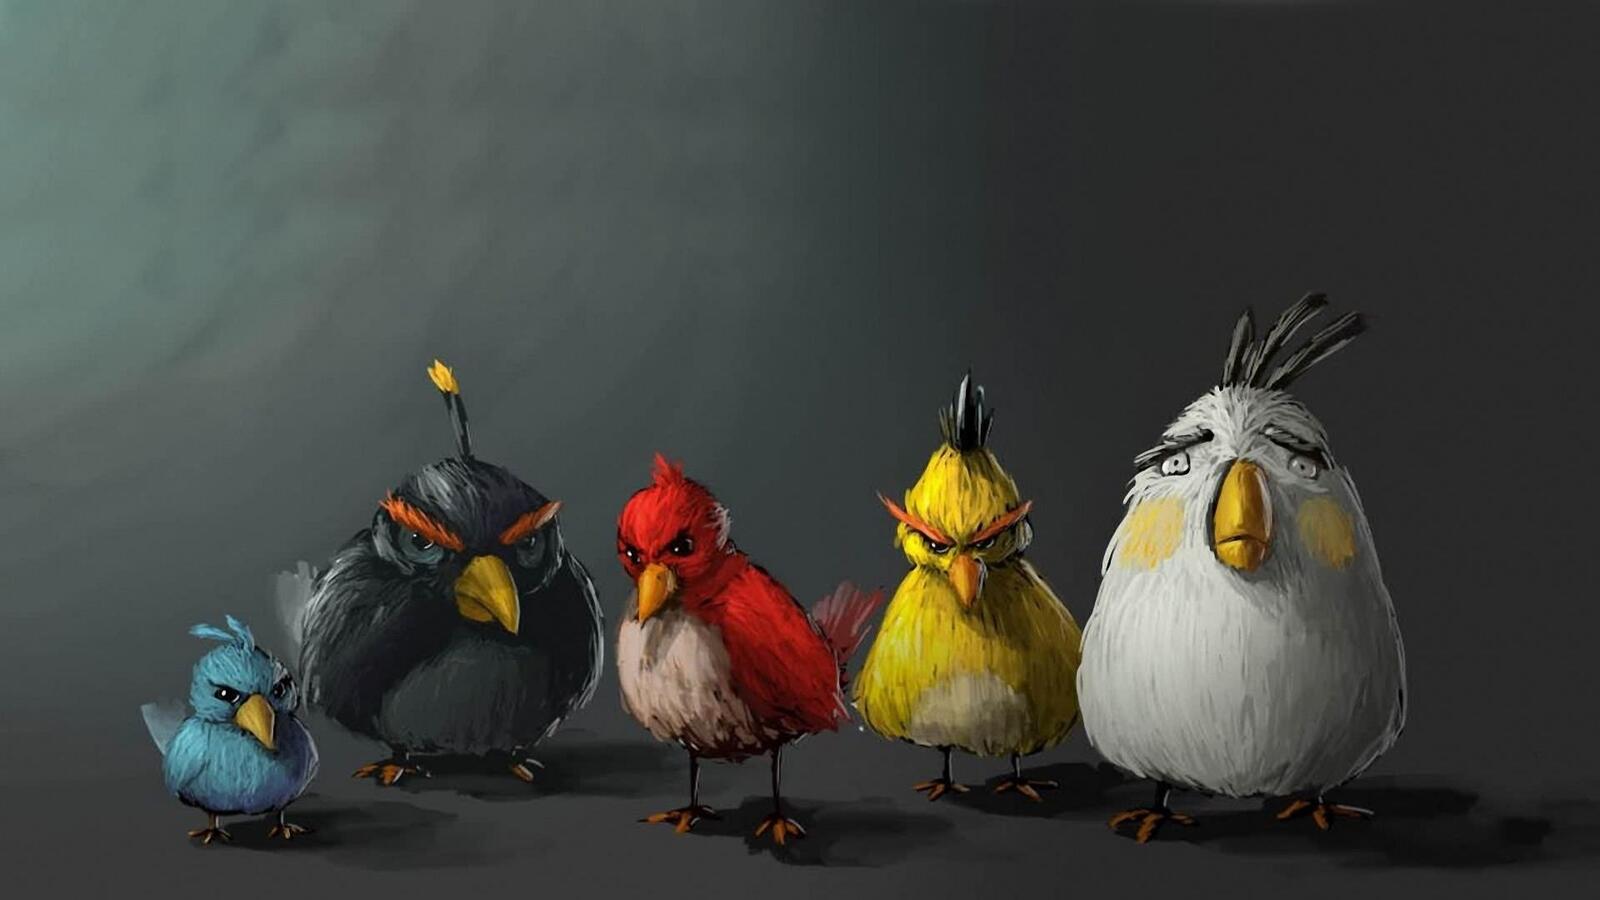 Бесплатное фото Нарисованные Angry Birds